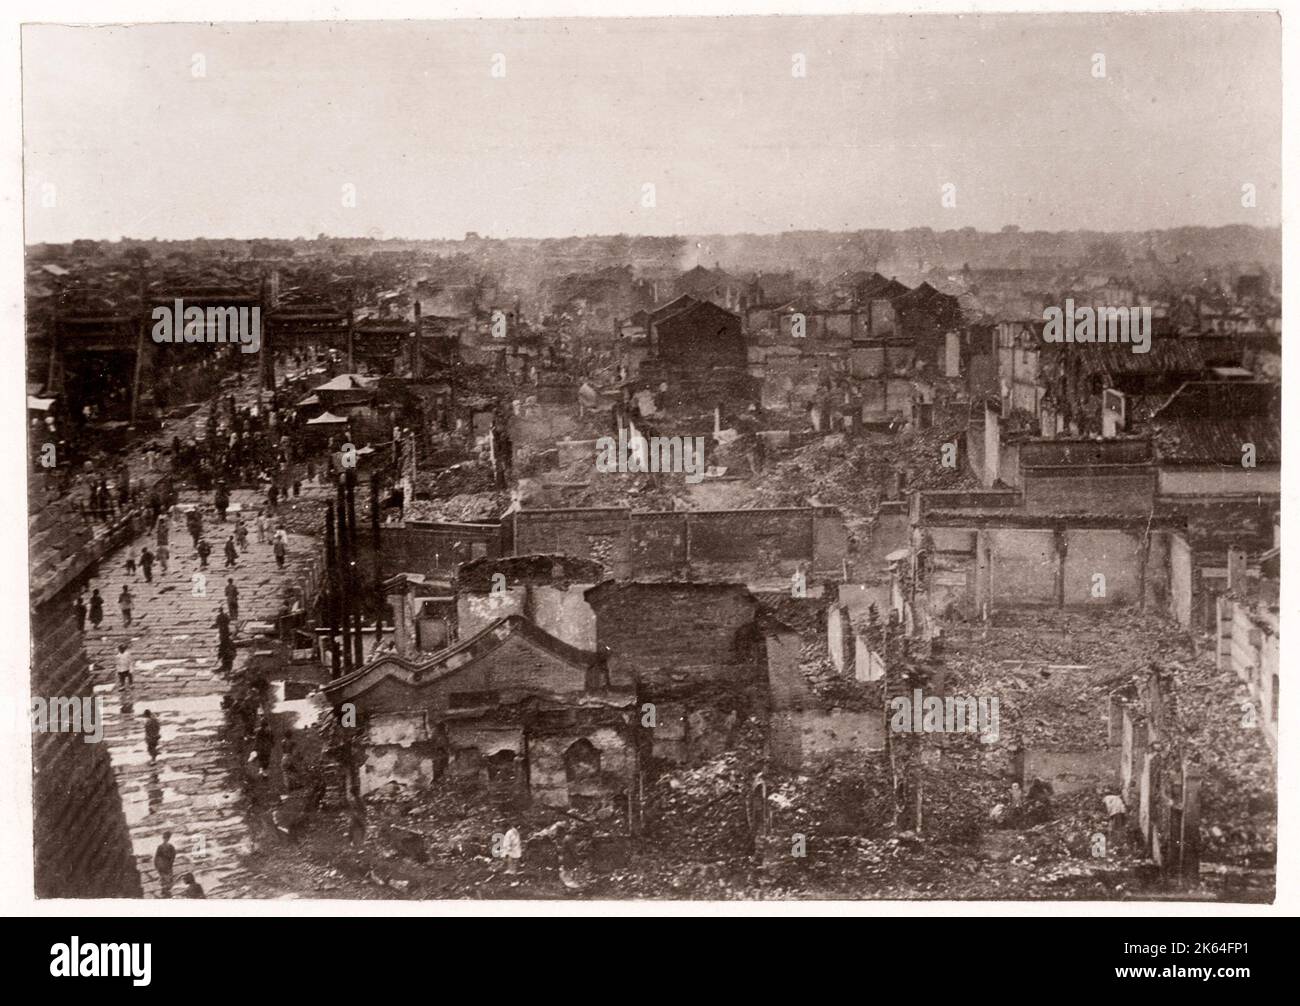 Vintage Foto China 1900 - Boxer Rebellion oder Aufstand, Yihetuan Bewegung - Bild aus einem Album eines britischen Soldaten, nahmen an der Unterdrückung des Aufstandes - Ruinen in Peking Peking Stockfoto